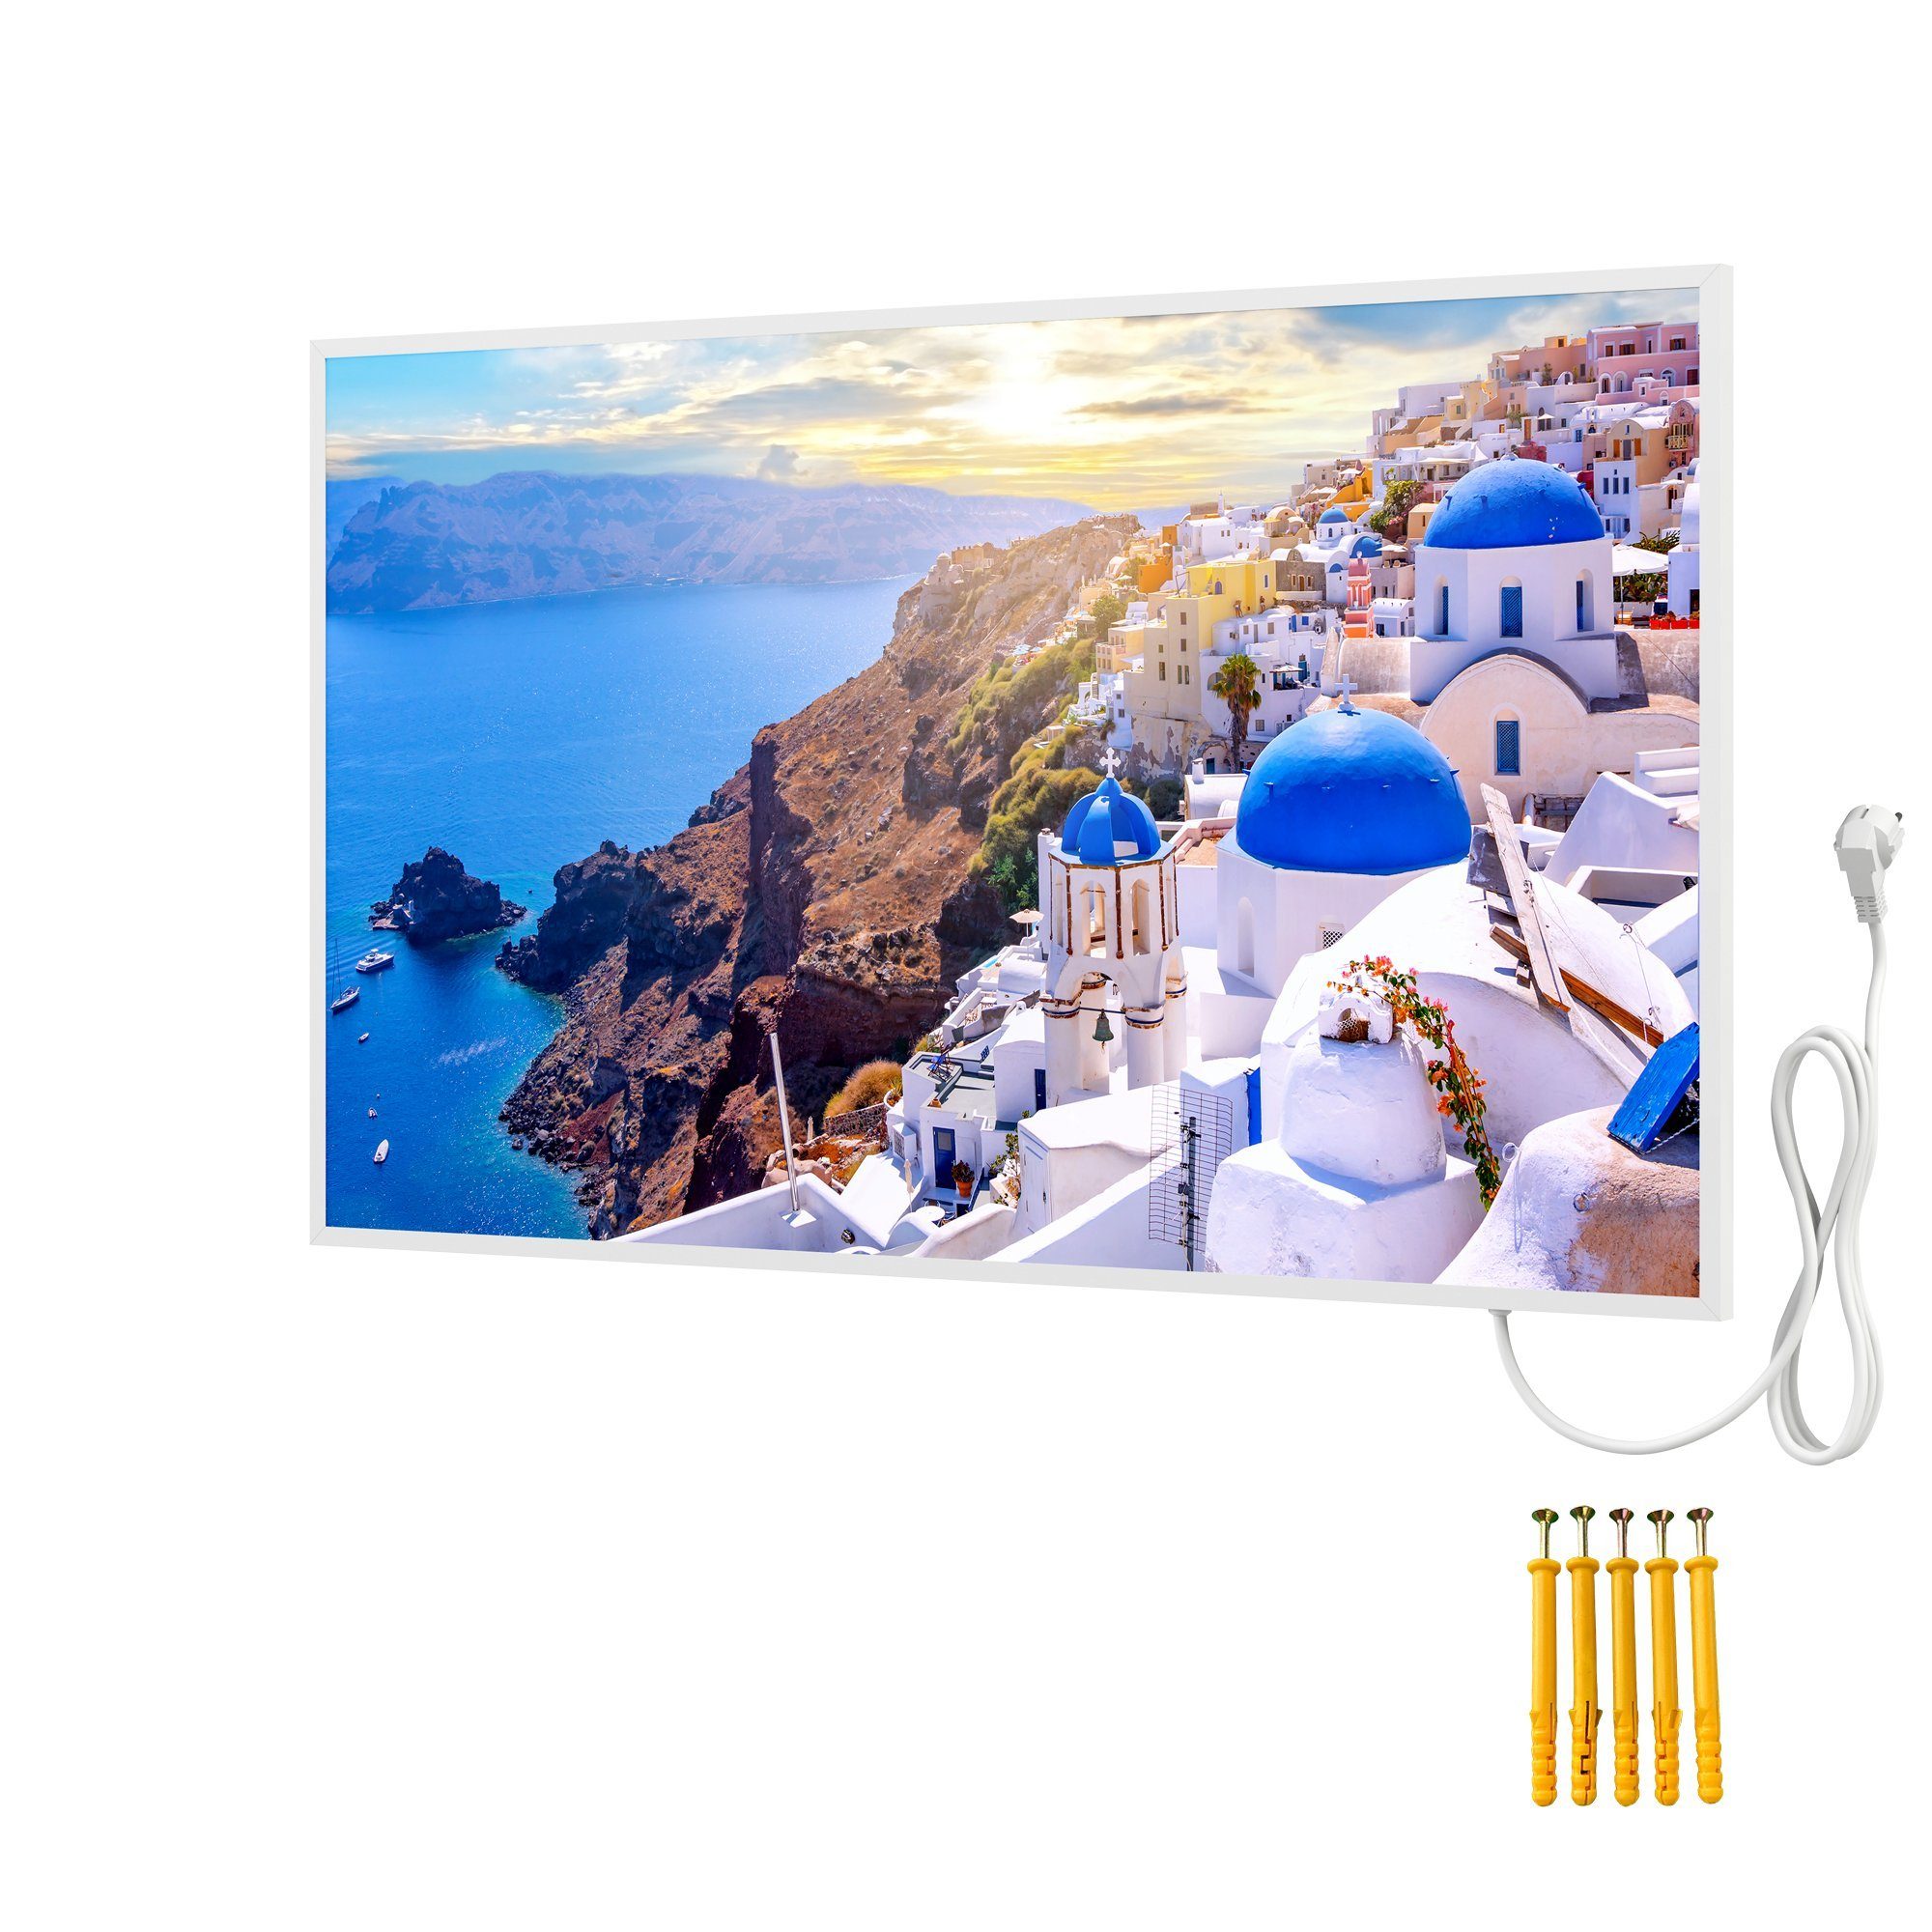 Motiv: Infrarotheizung Infrarotheizung Santorini, Rahmen, Griechenland mit Bringer Bild Bildheizung,